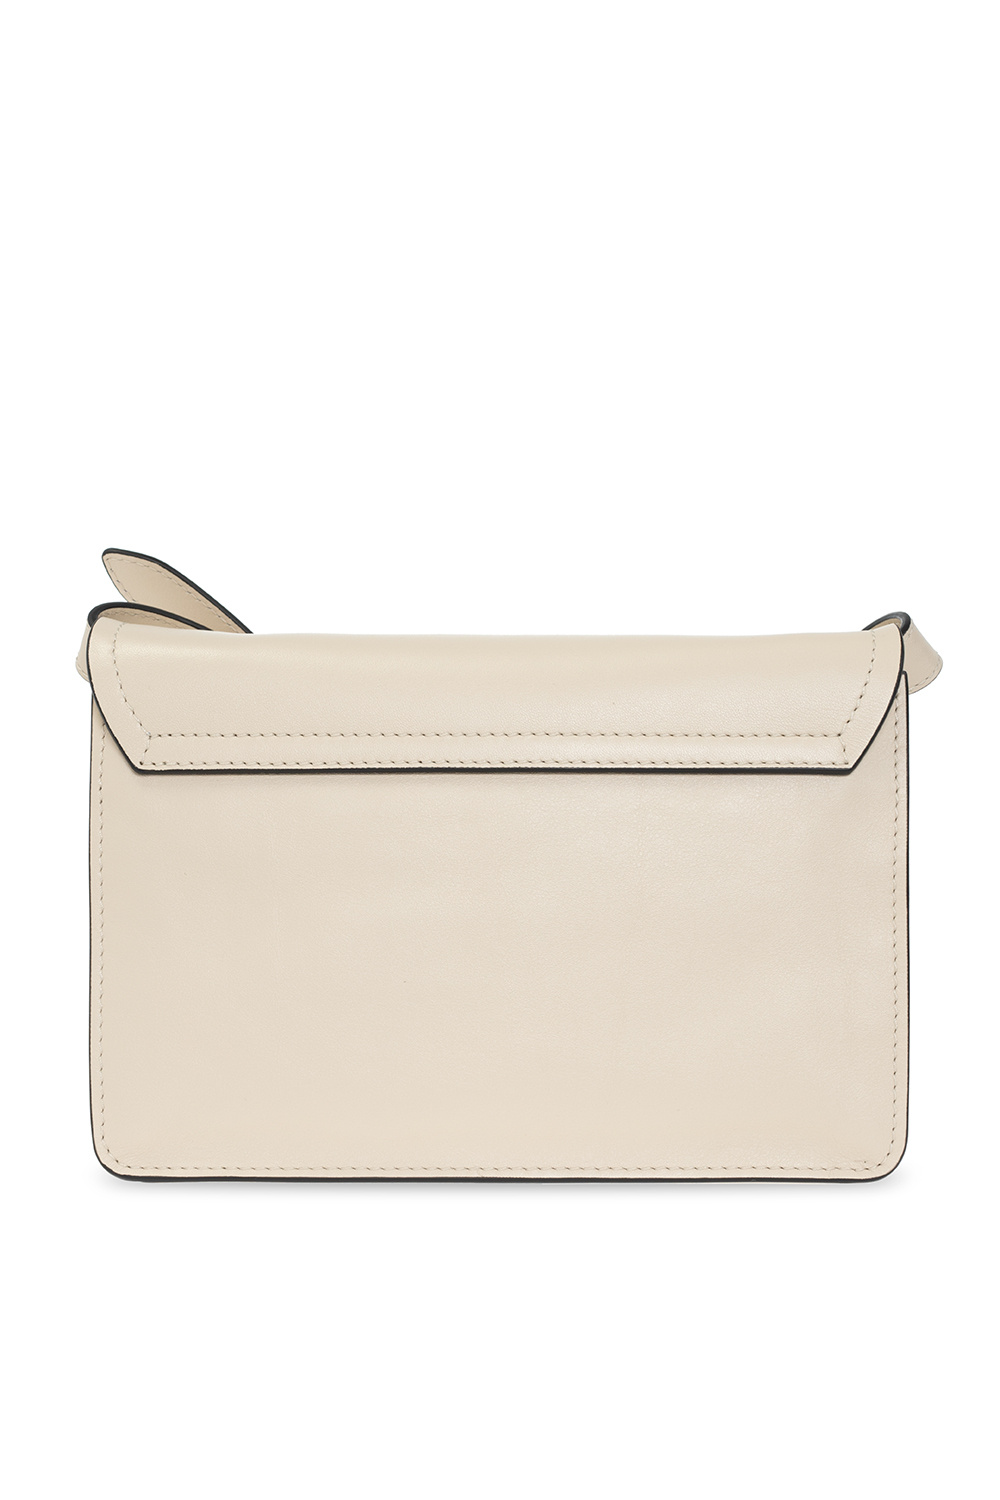 Moschino ‘M Small’ shoulder Arcane bag